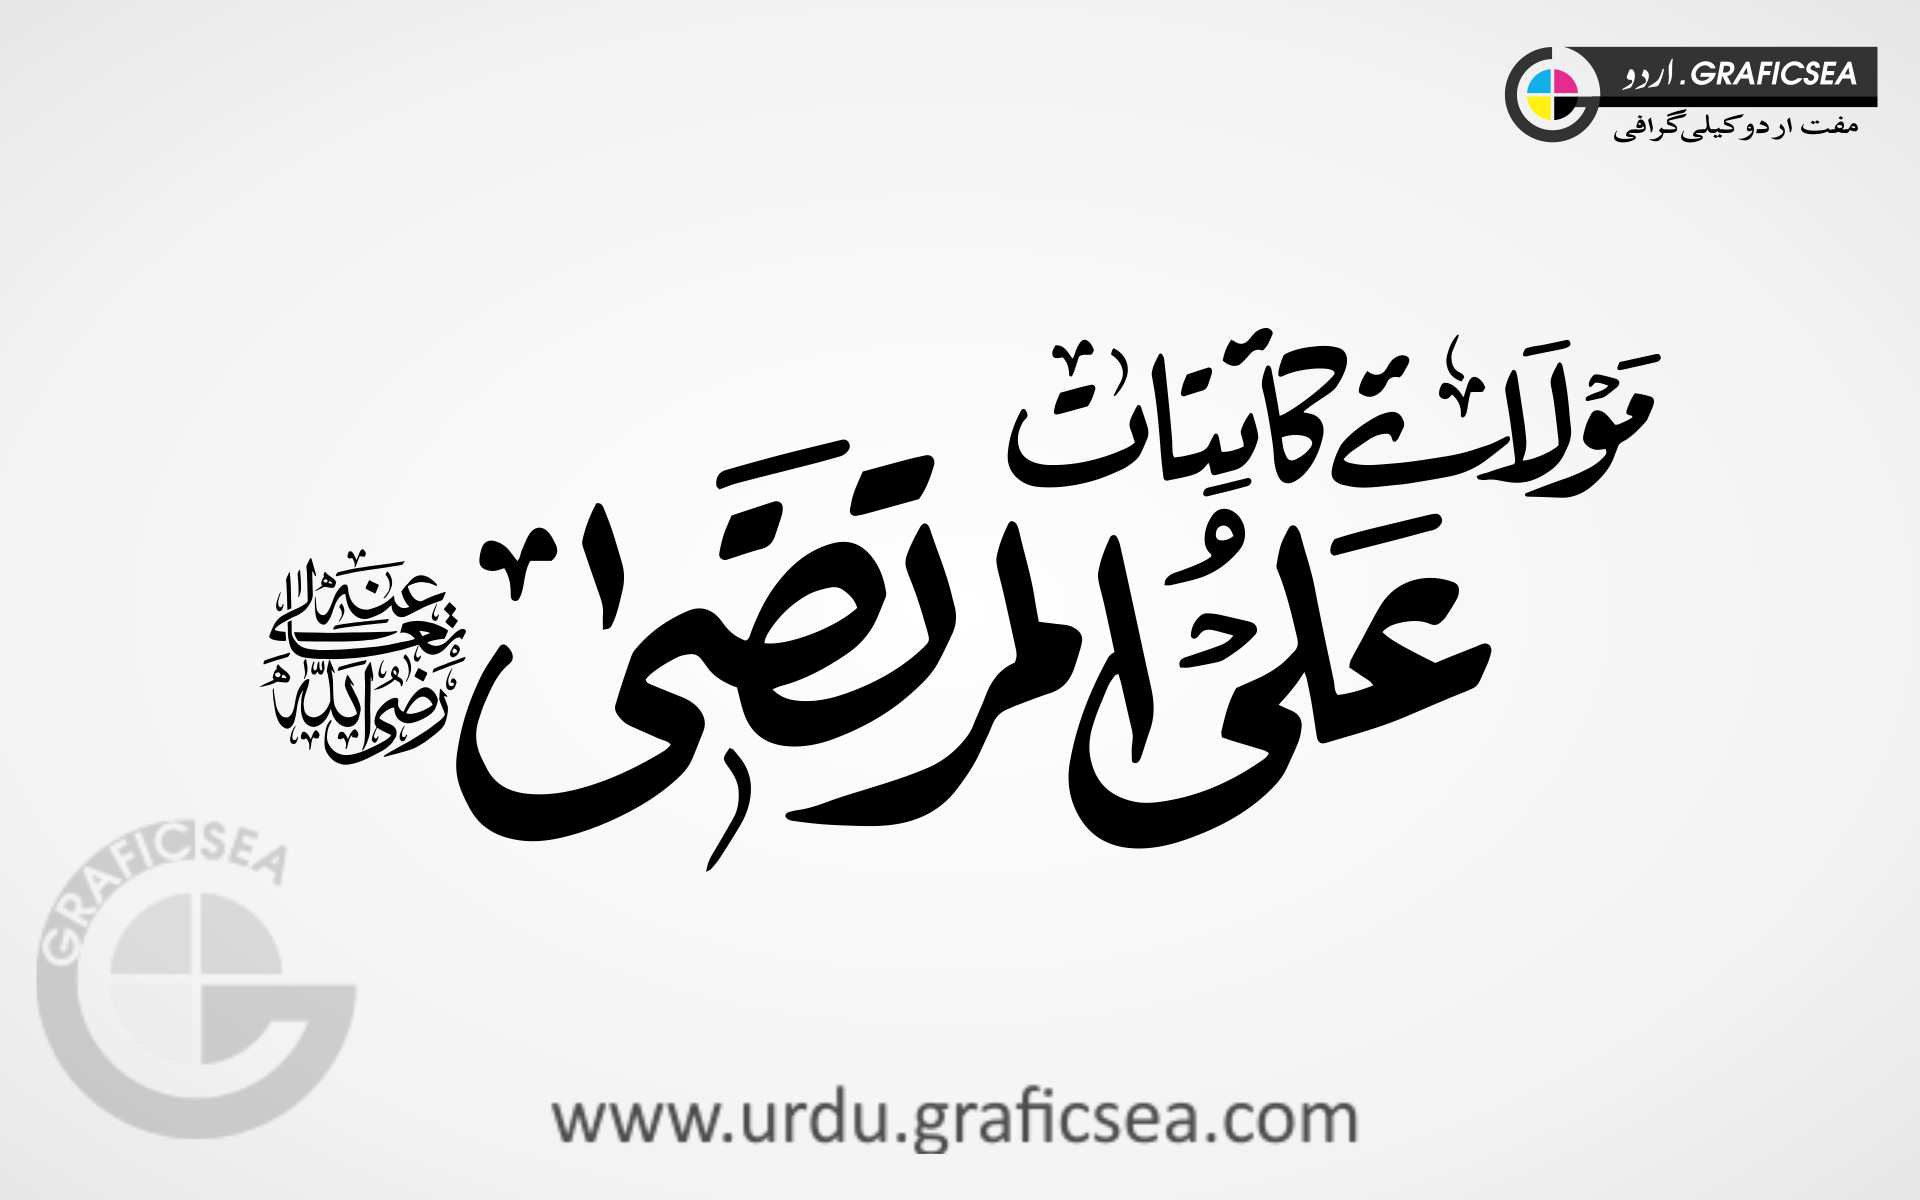 Mola e Kainat Ali al Murtaza Urdu RA Calligraphy